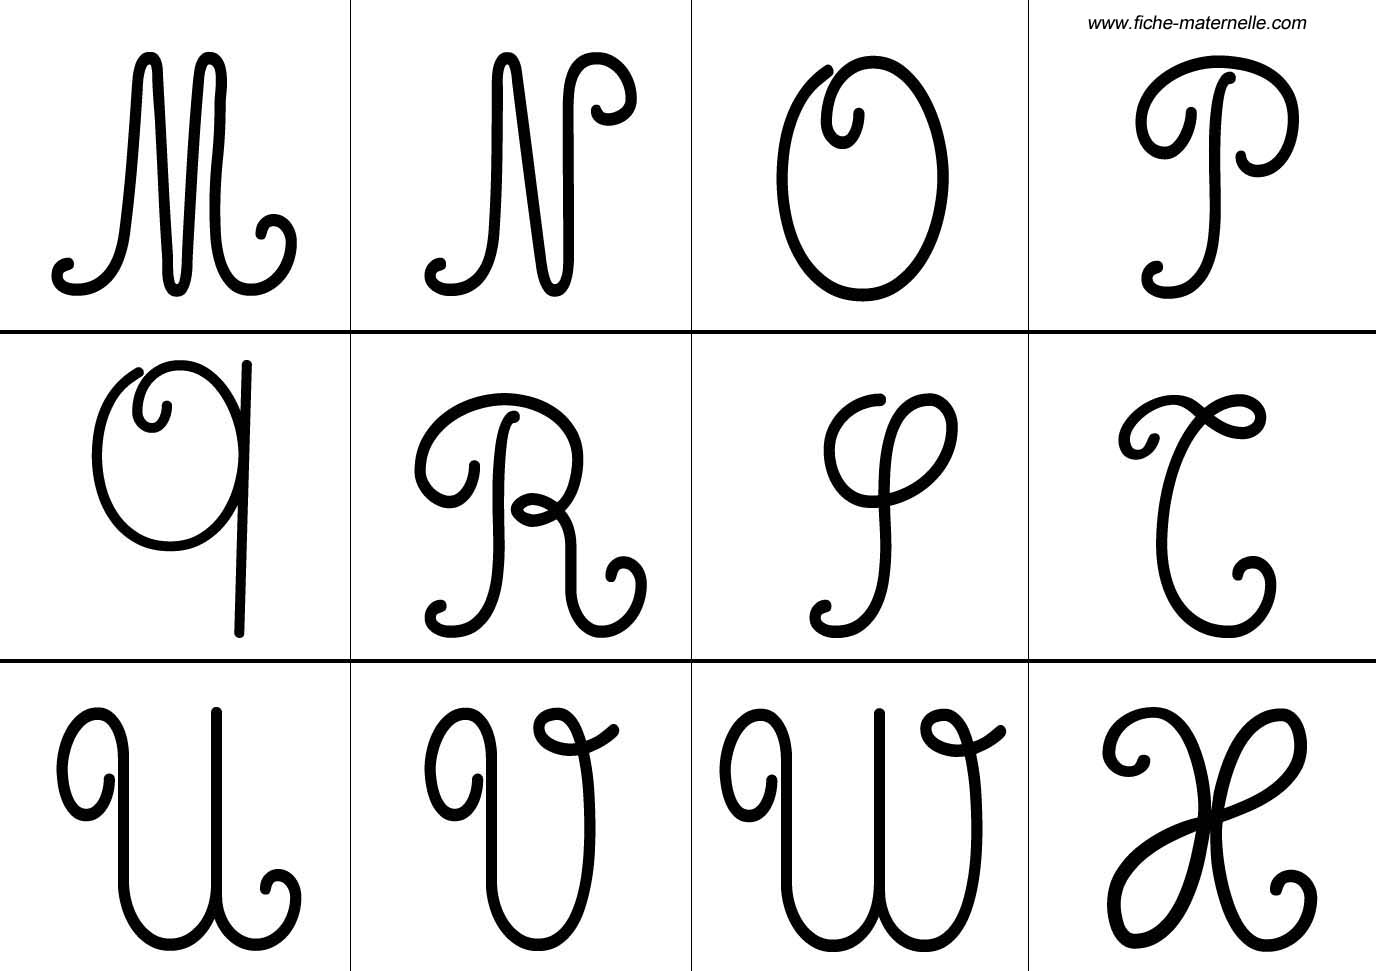 Les lettres de l alphabet sous forme d une frise